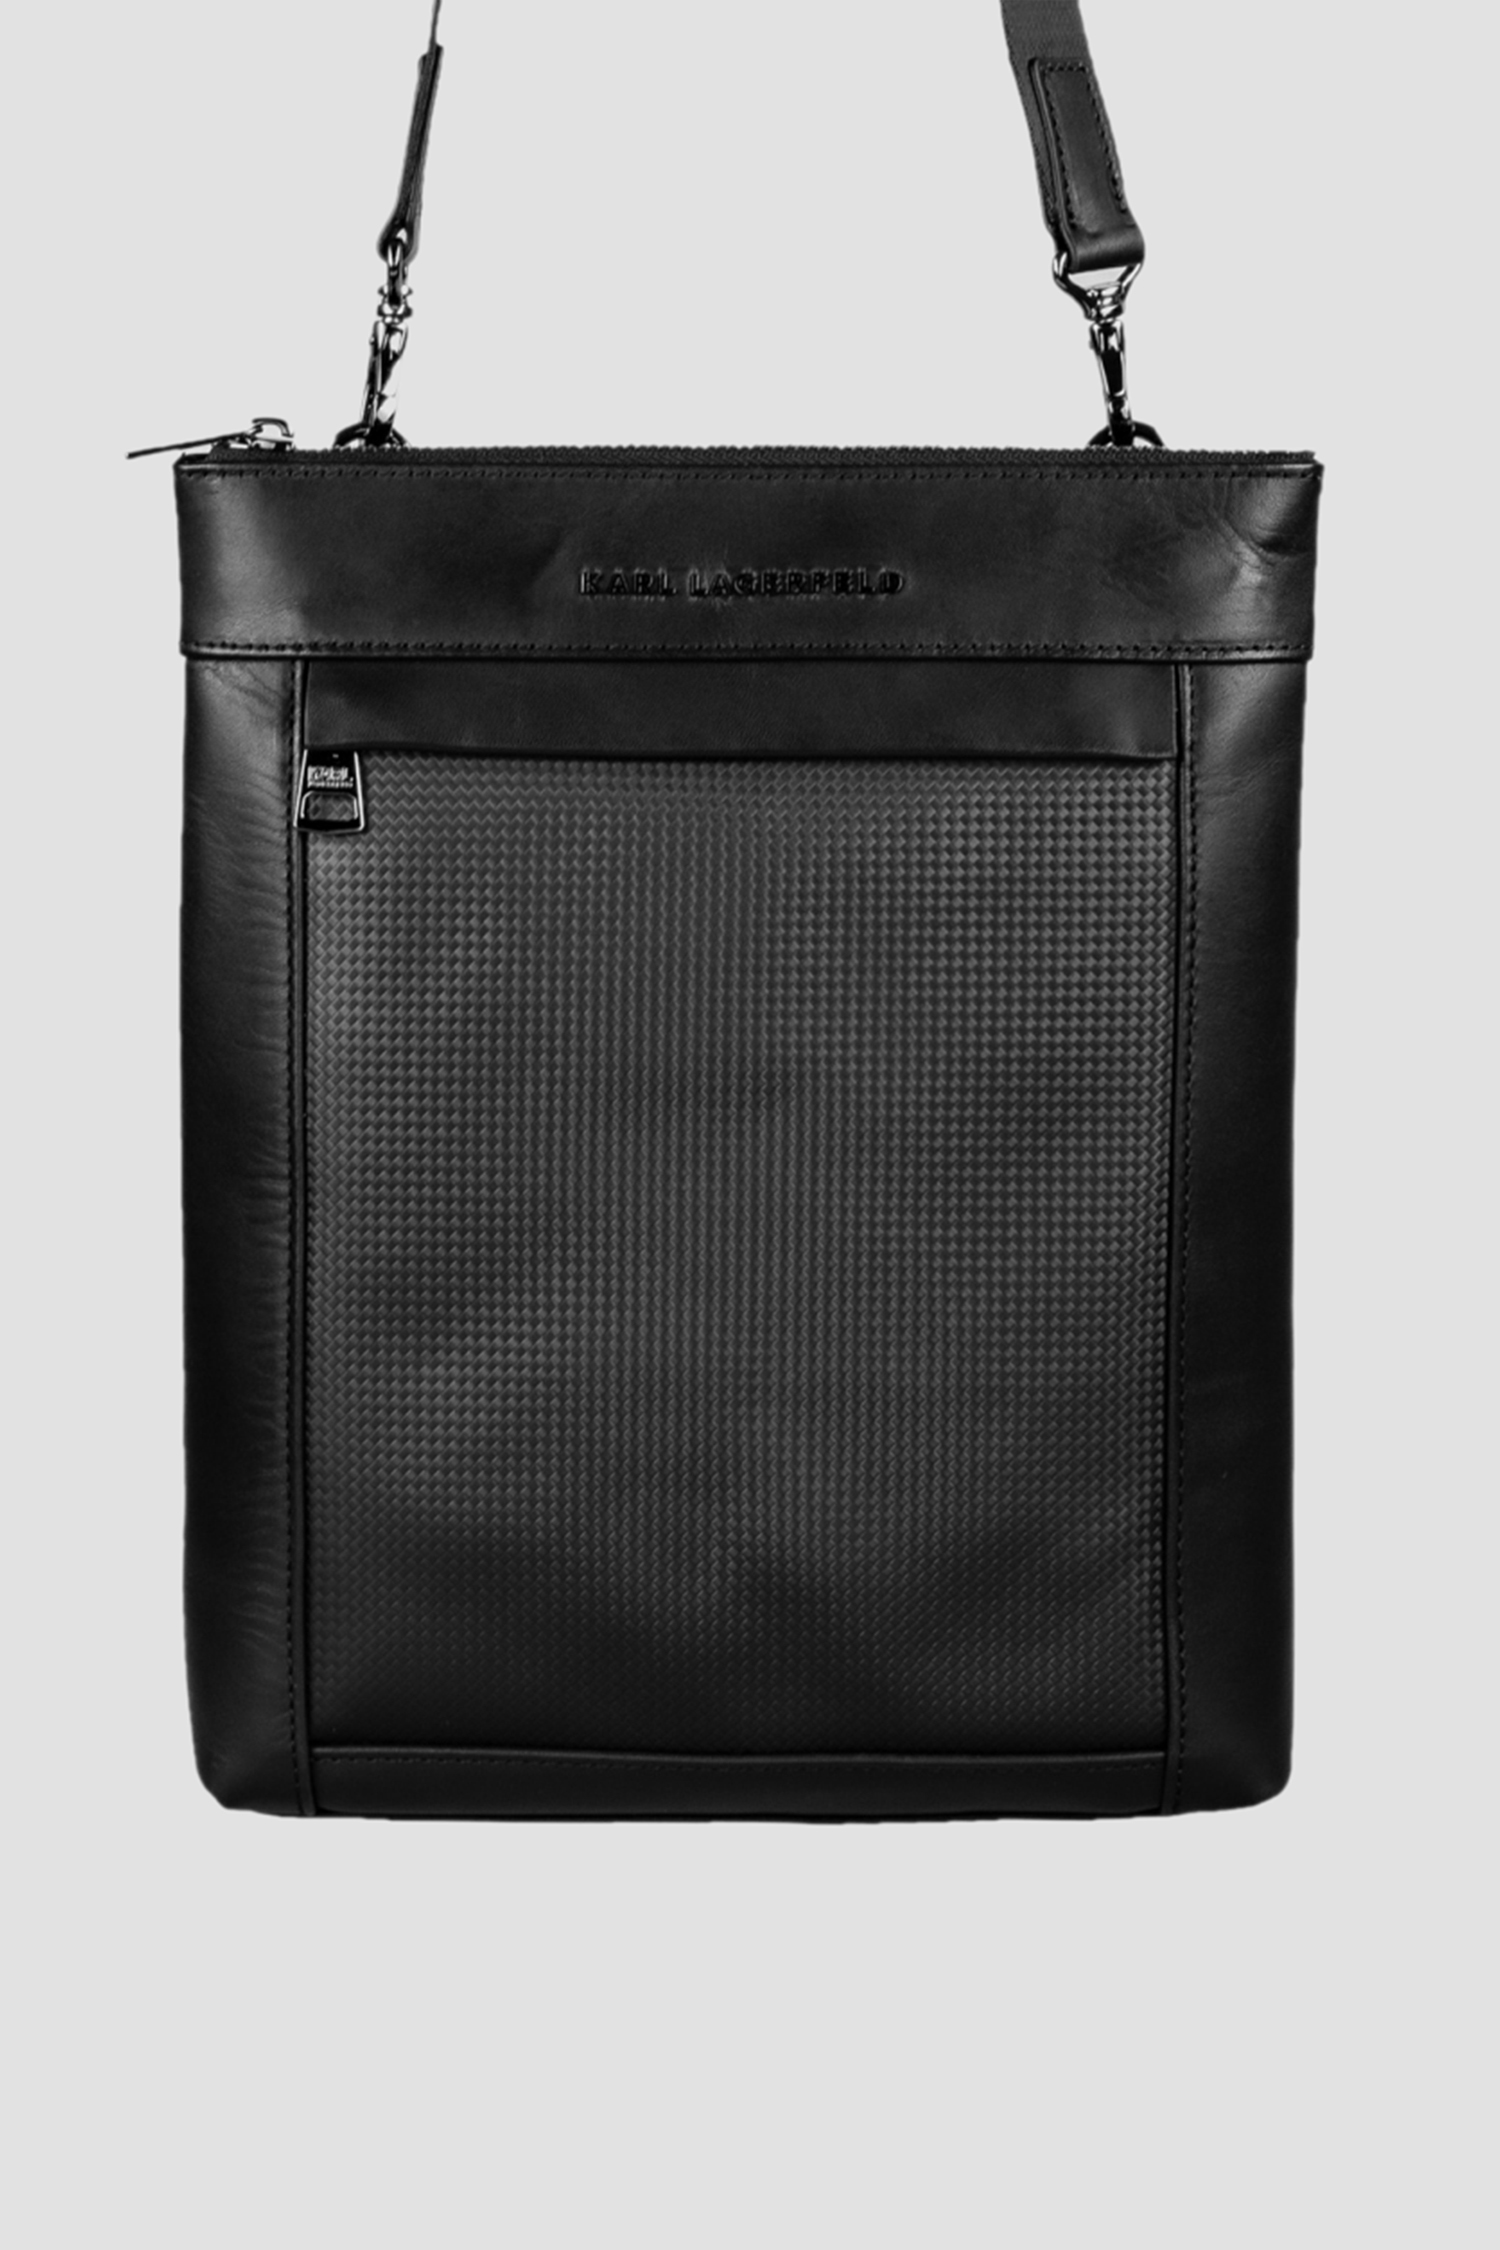 Мужская черная кожаная сумка Karl Lagerfeld 521450.815903;990